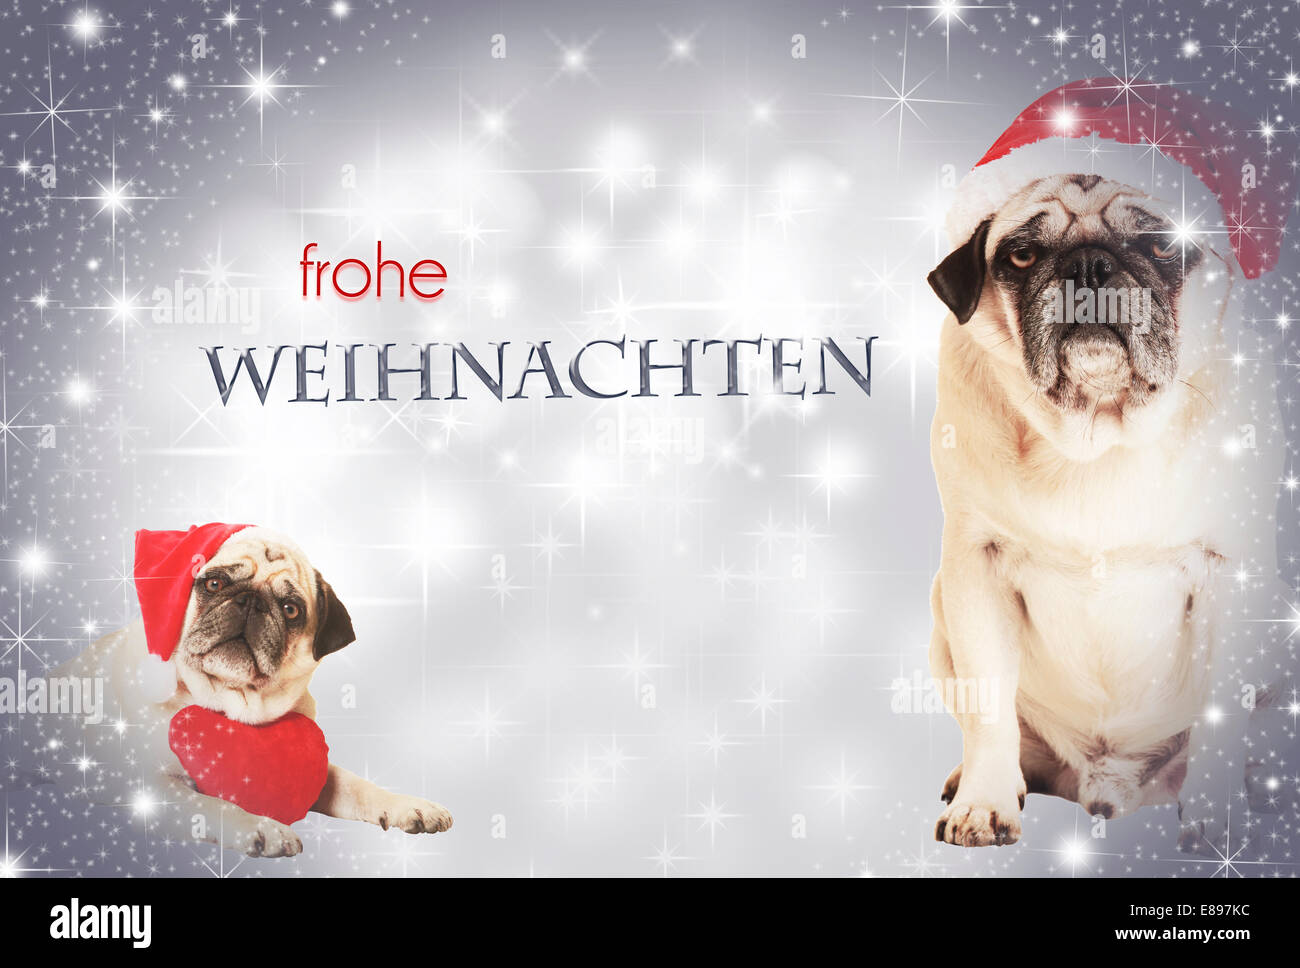 Deux chiens habillés en Père Noël avant de l'arrière-plan, avec texte scintillant Frohe Weihnachten Banque D'Images